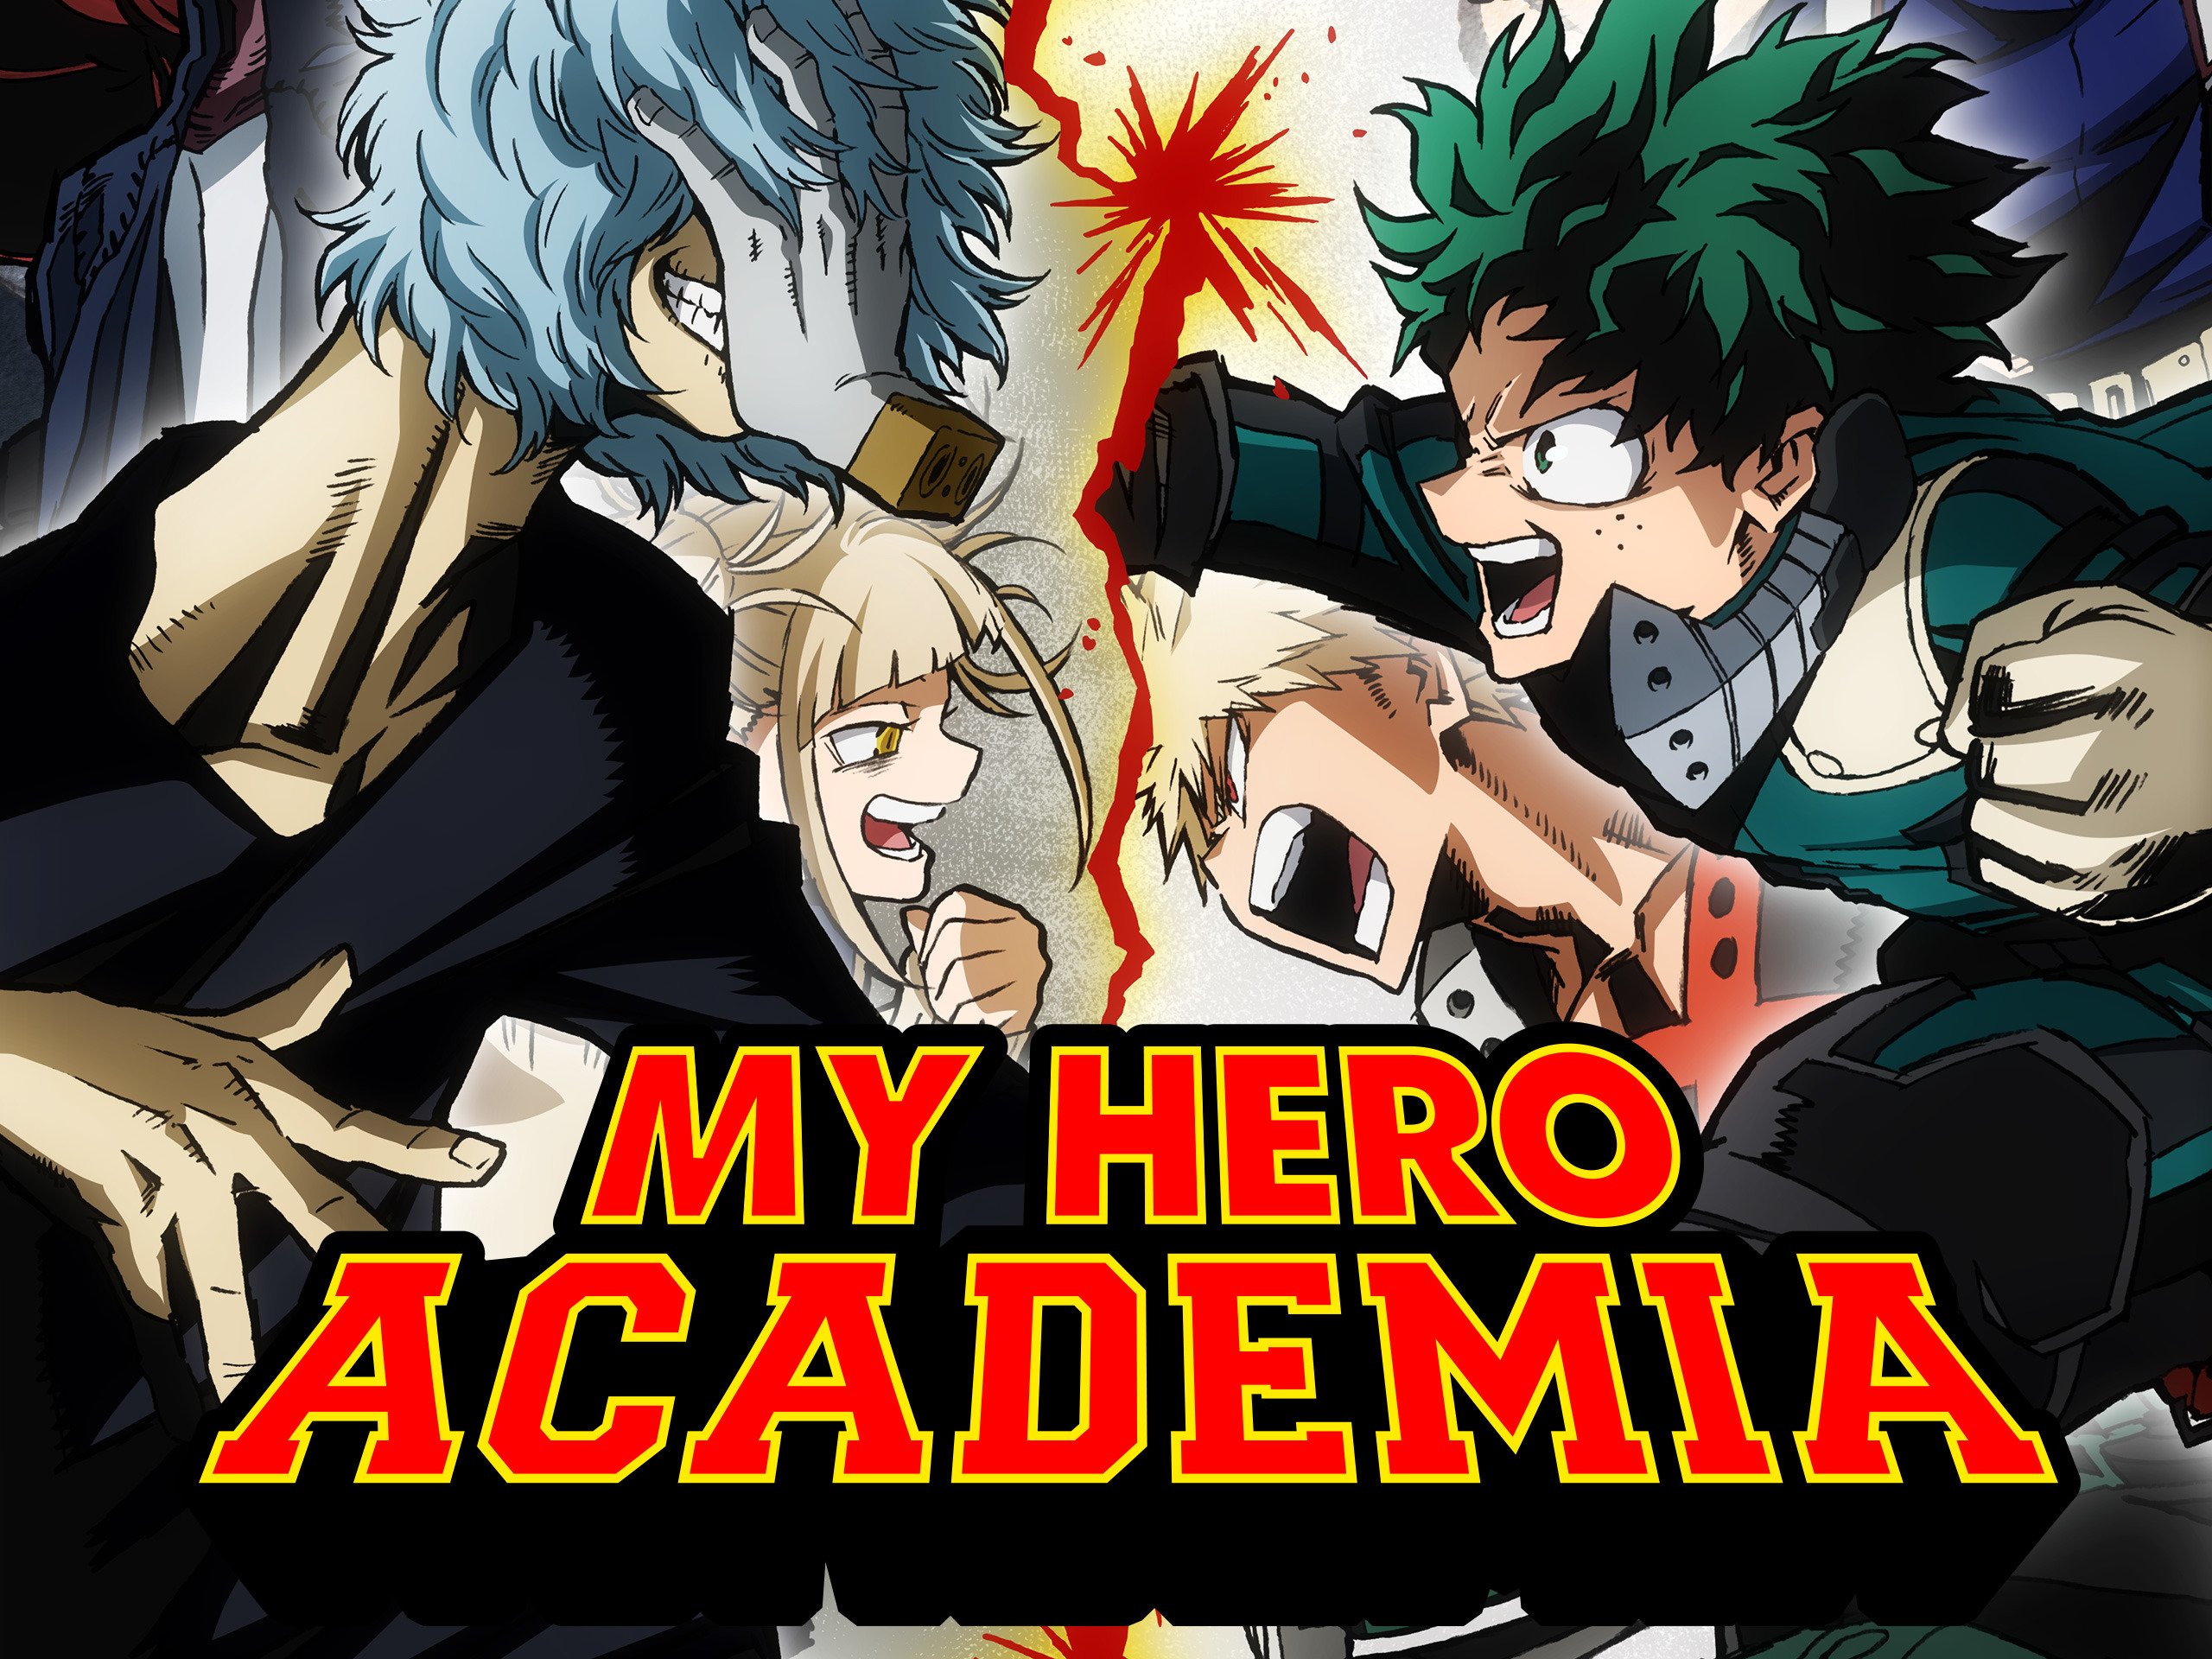 My Hero Academia 5 Episode 22 Release Date, Recap, And Spoilers